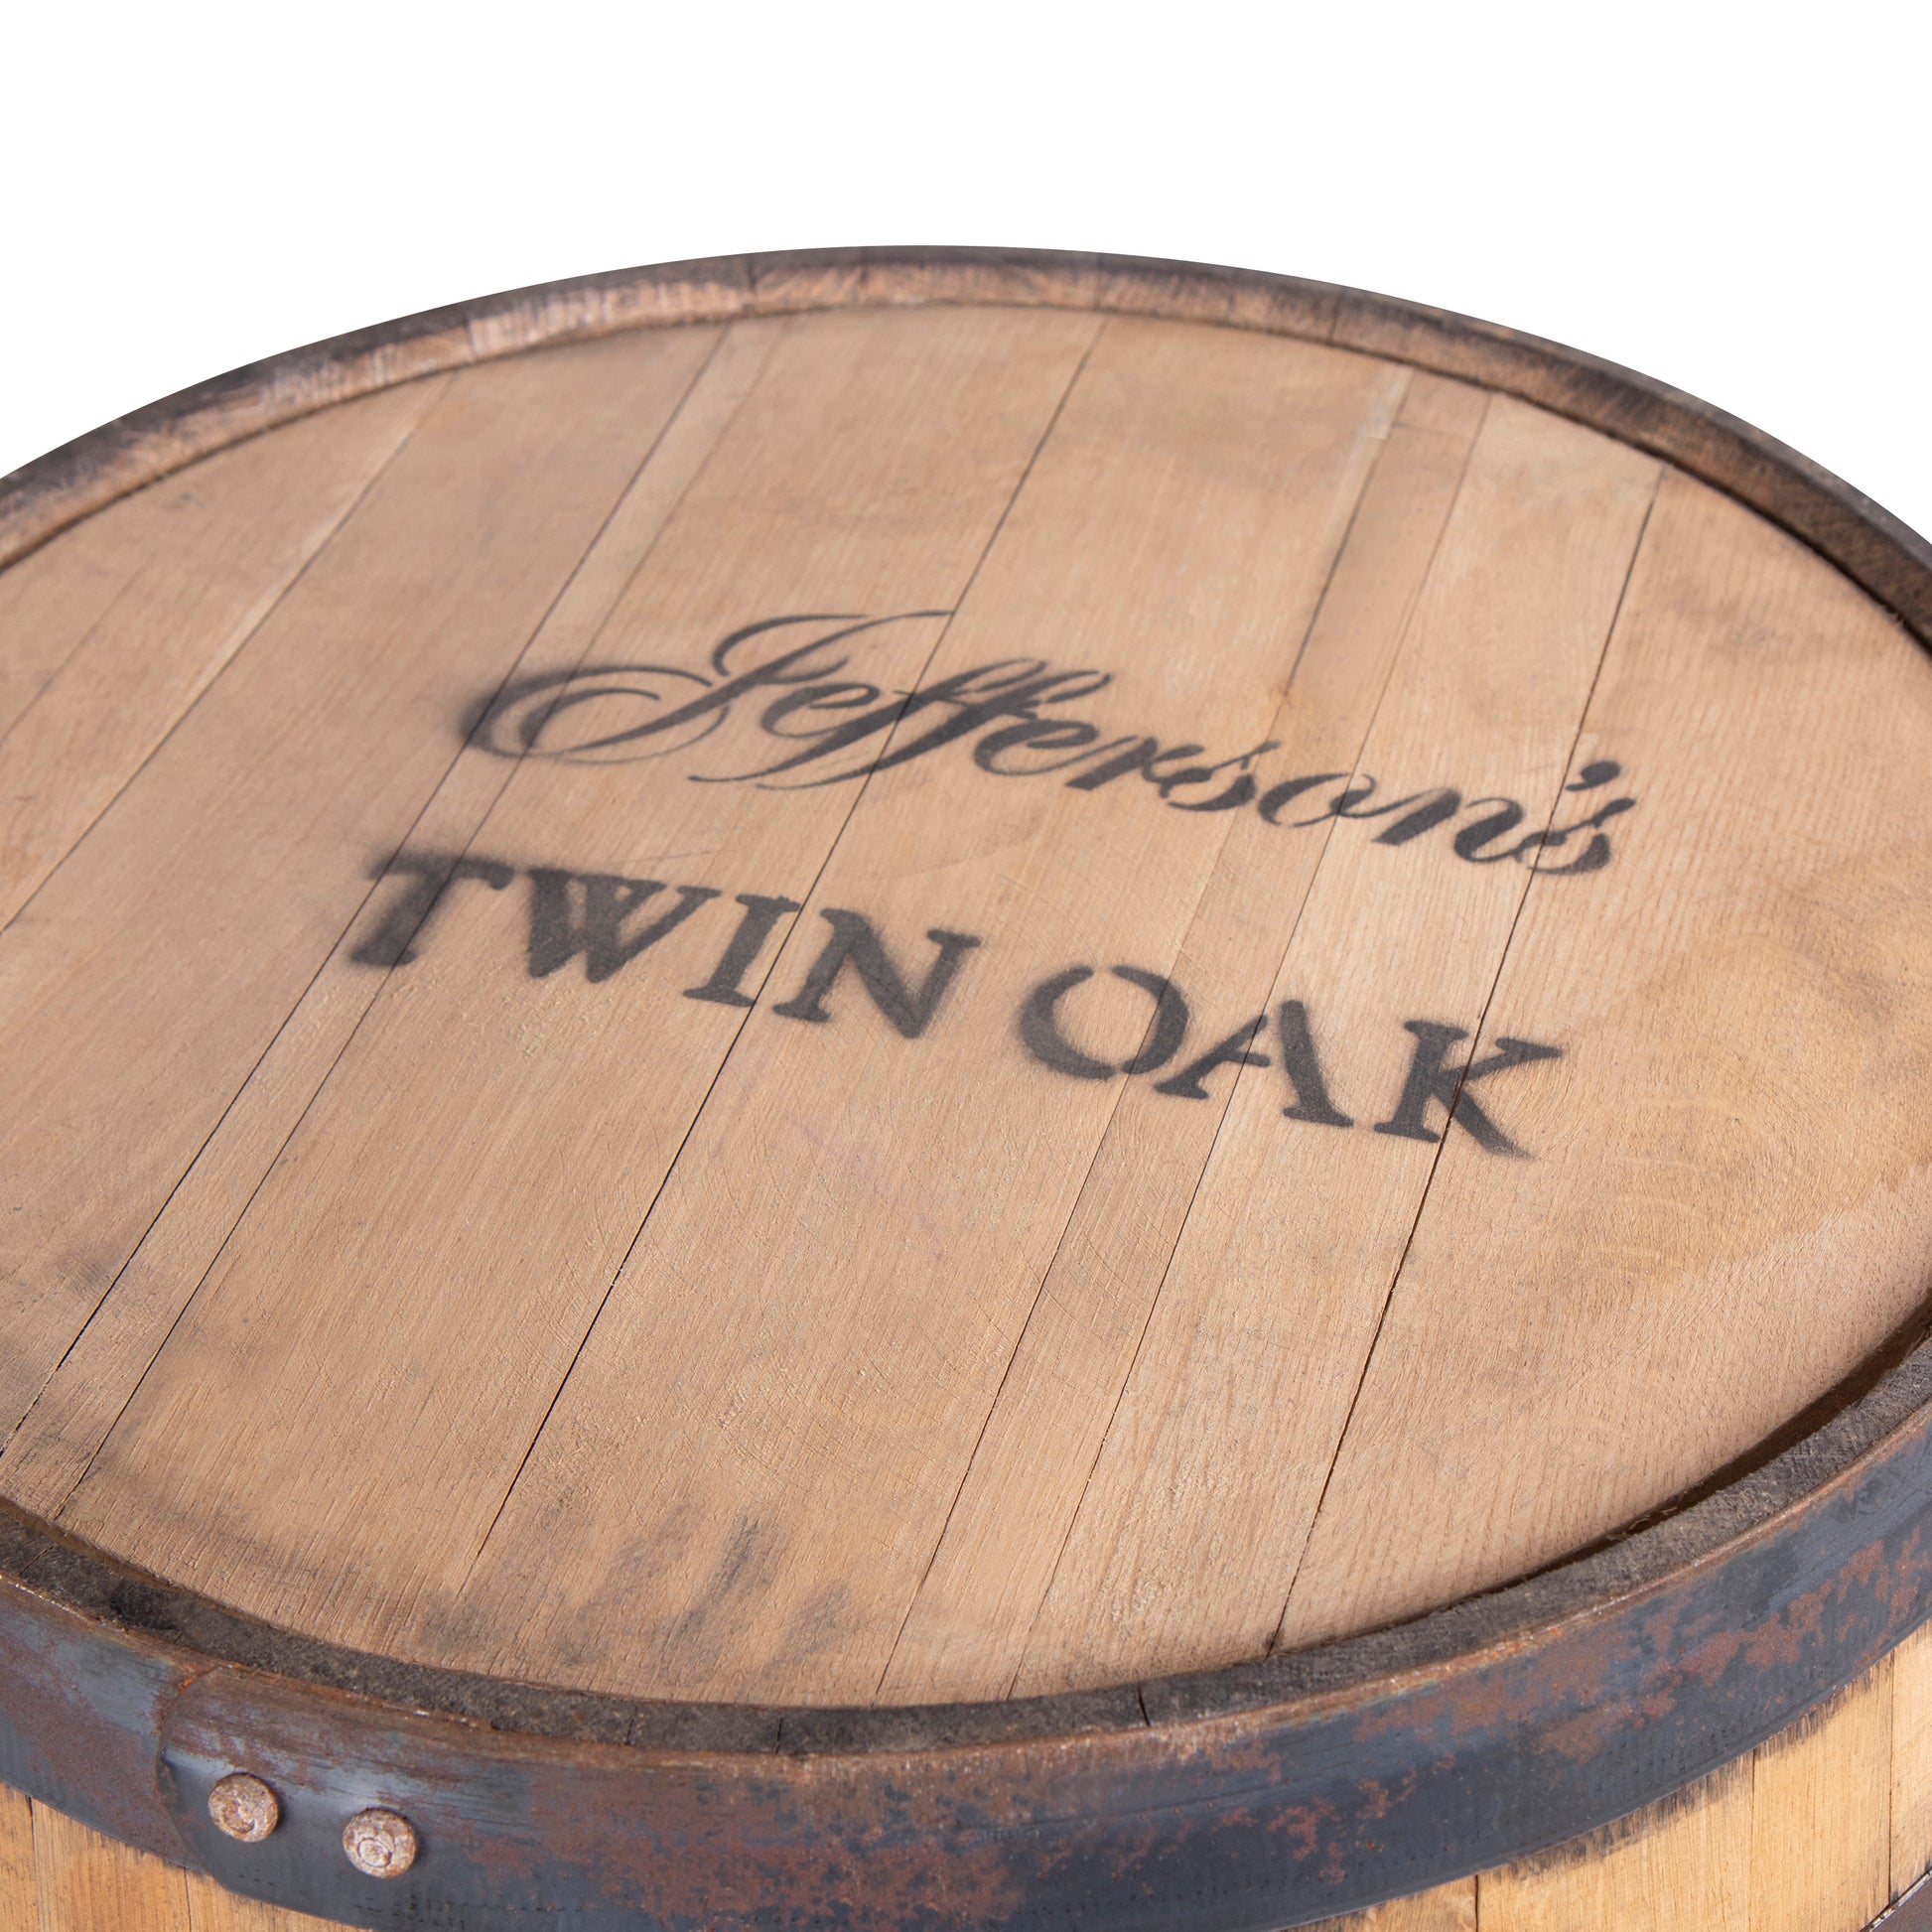 Furniture Grade - Jefferson's Twin Oak - Whiskey Barrel 53 Gallon - Motor City Barrels